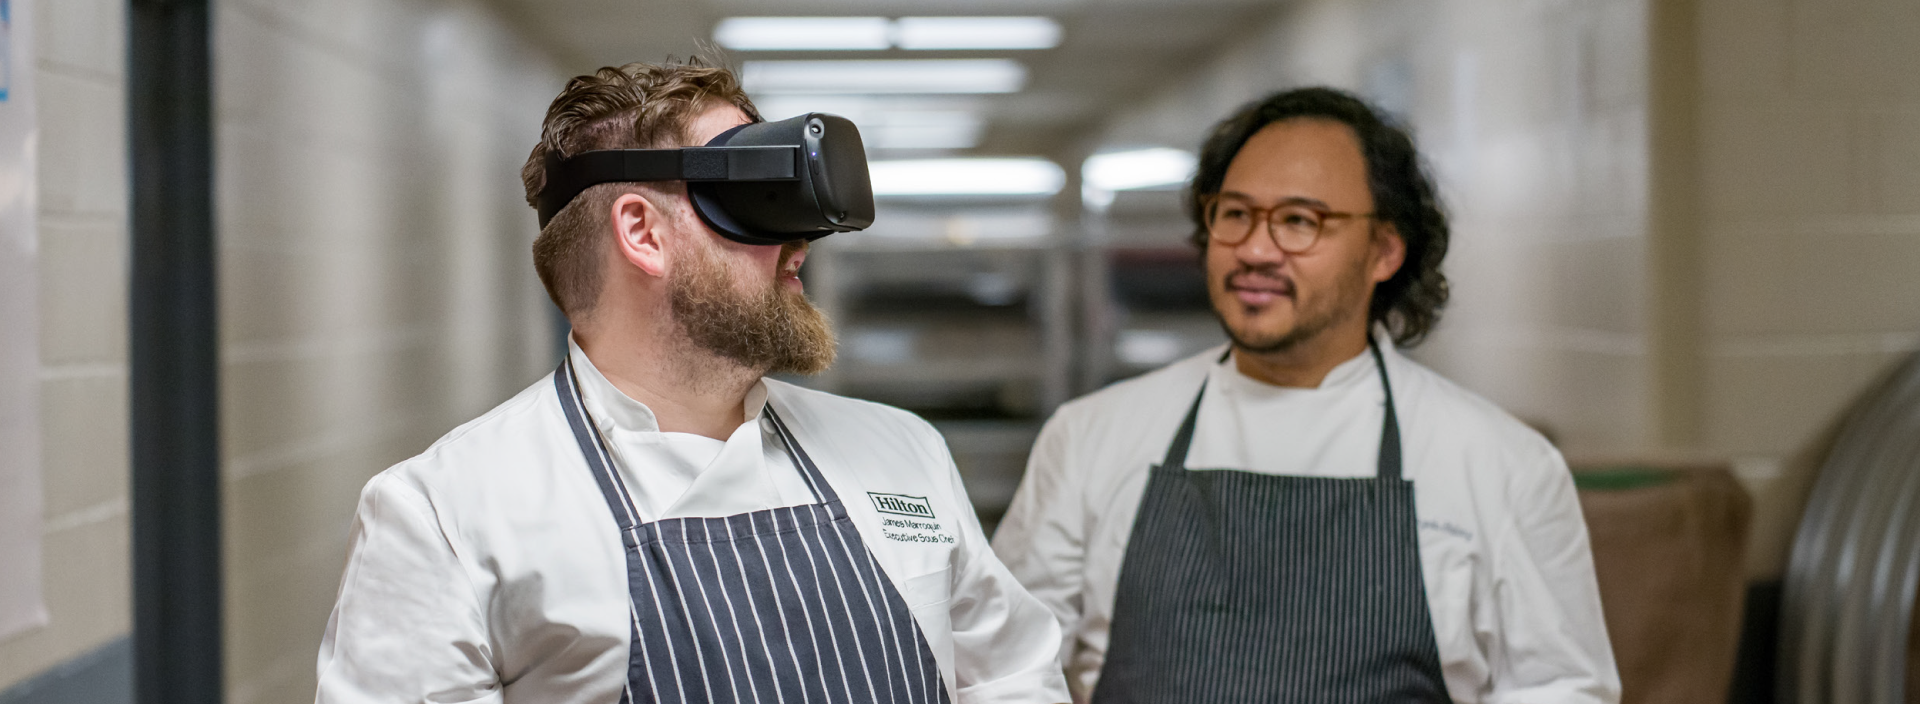 VR-обучение soft skills в гостиничном бизнесе | Разработка приложений VR и AR в Helmeton